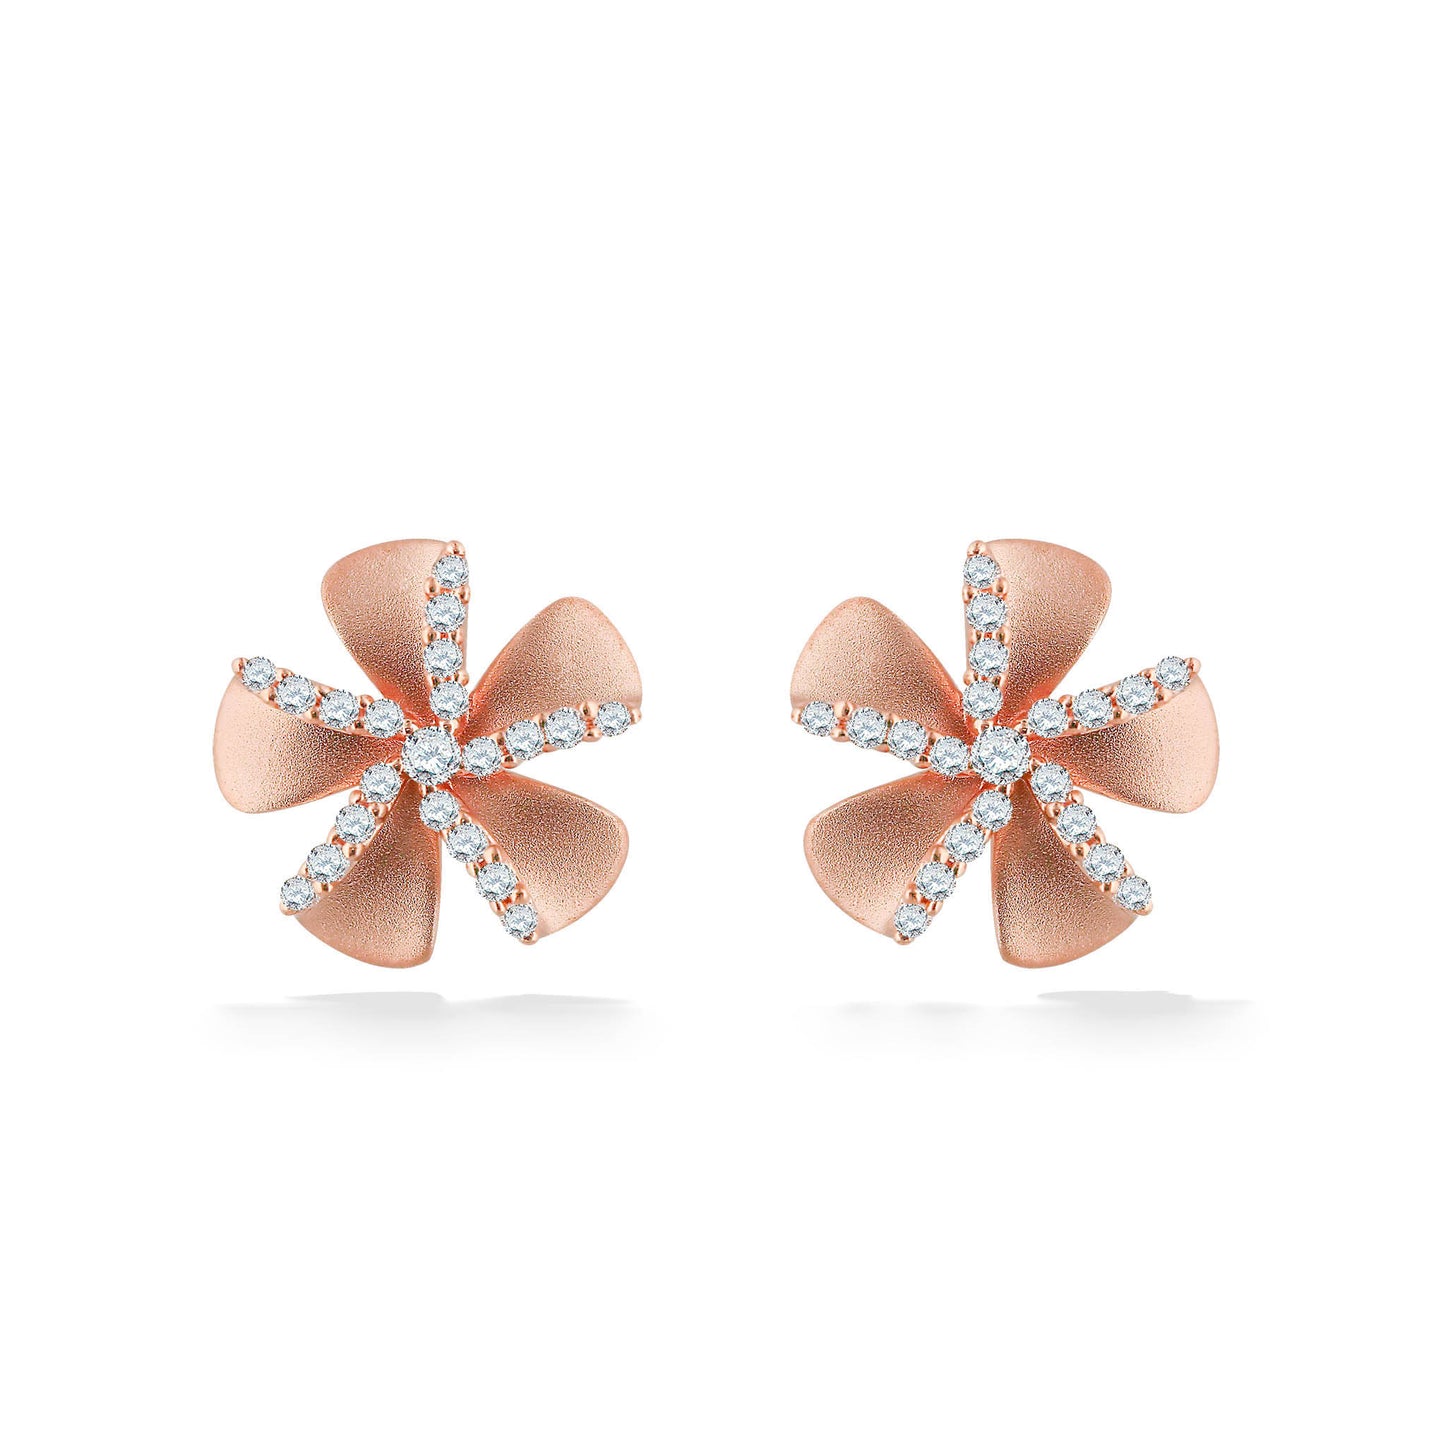 44687 - 14K Rose Gold - Plumeria Stud Earrings